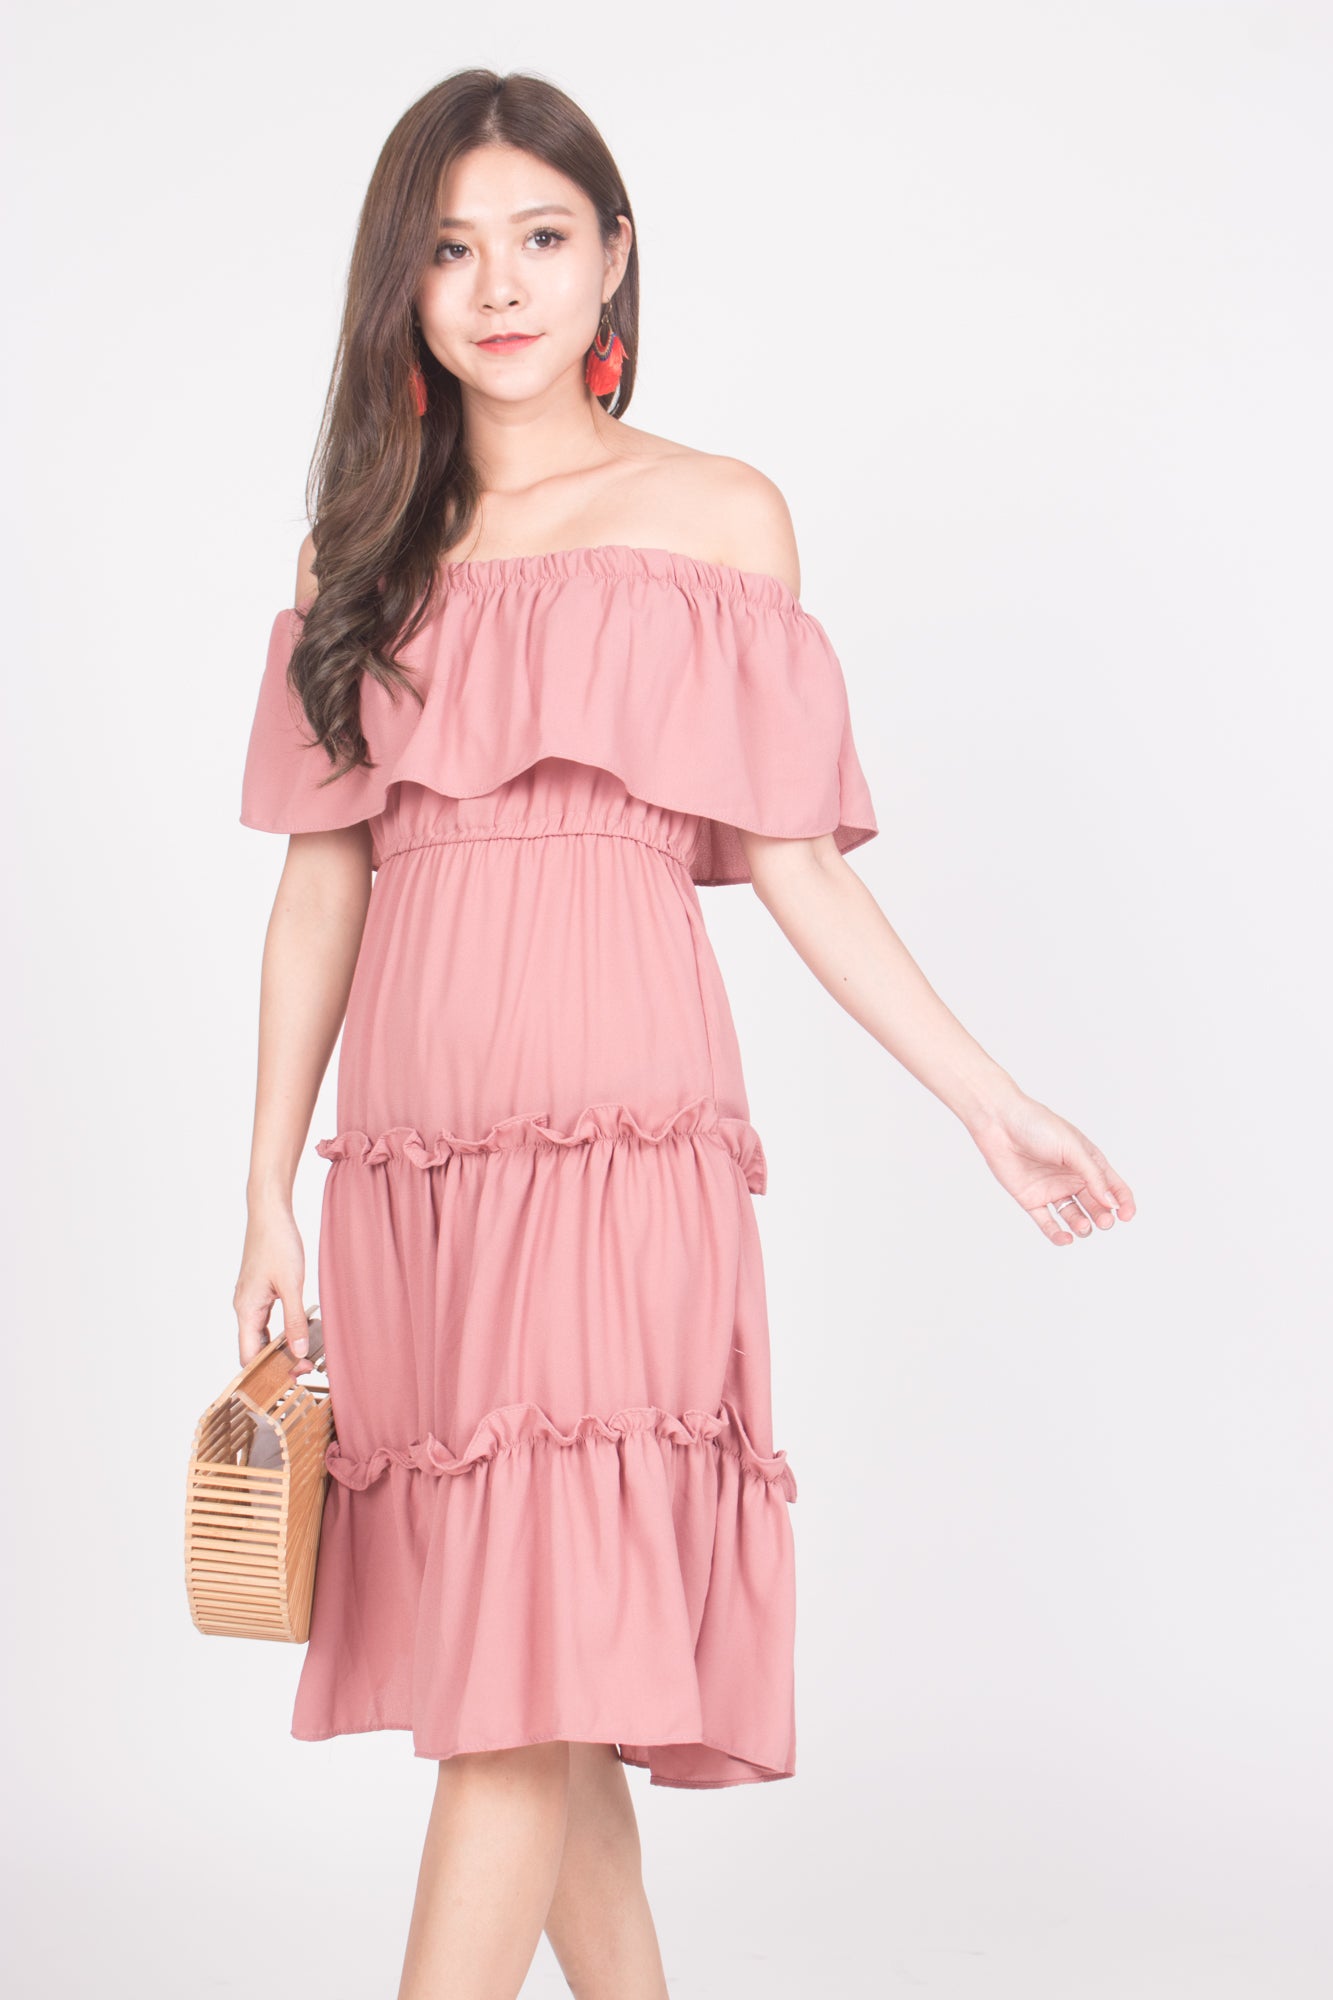 Mietta 3 Ways Dress in Blush Pink